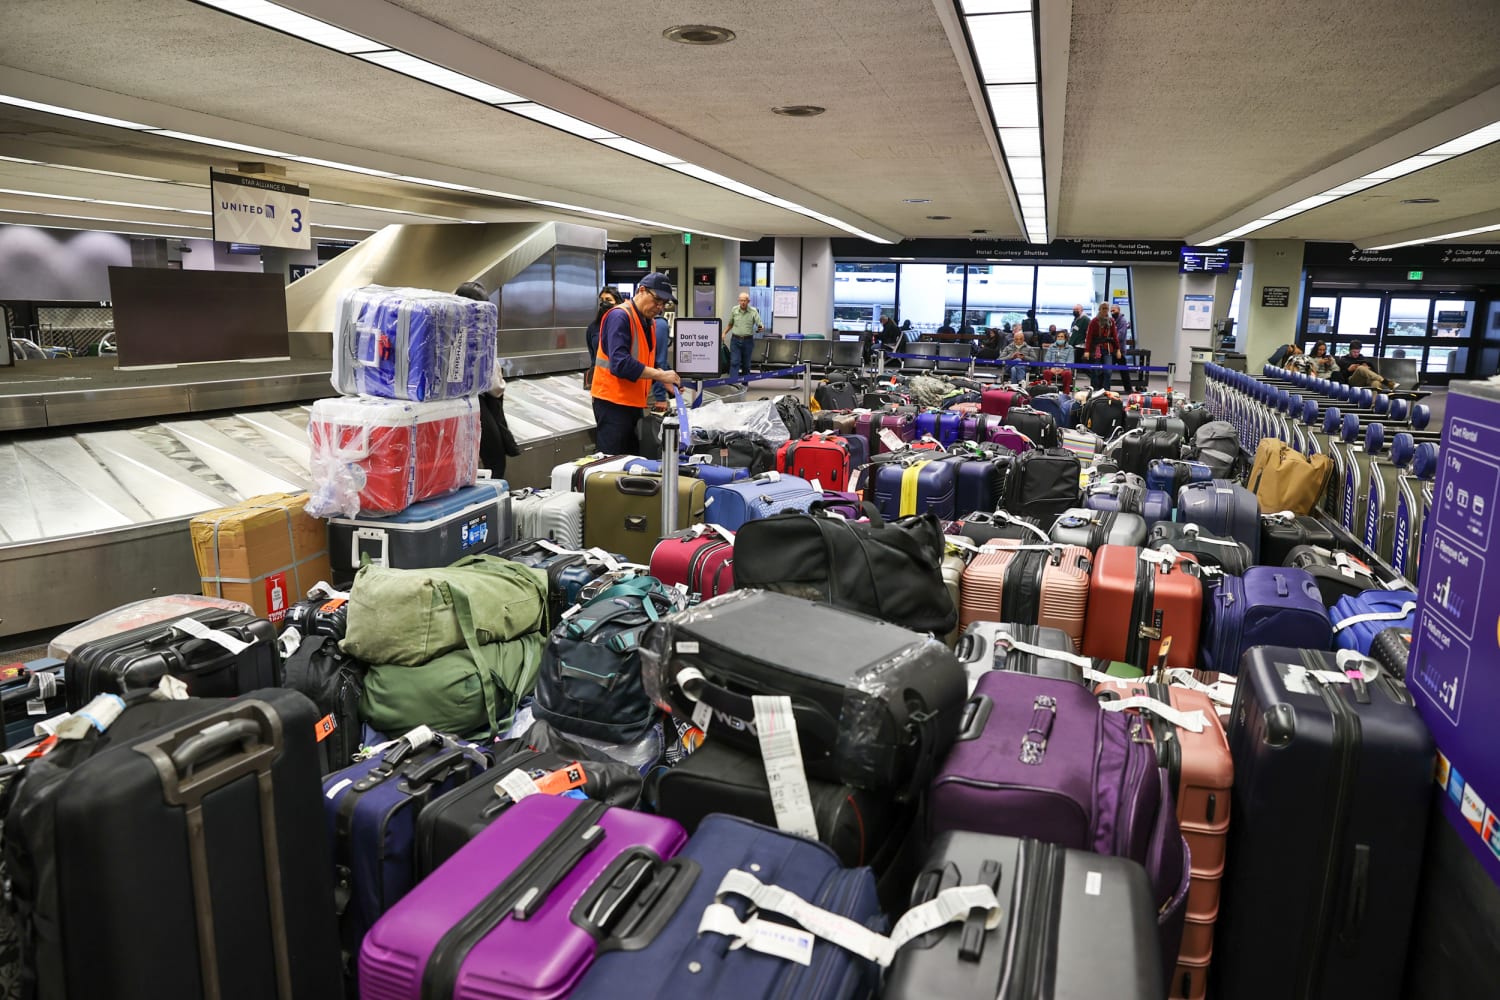 United passenger goes viral after sharing luggage saga